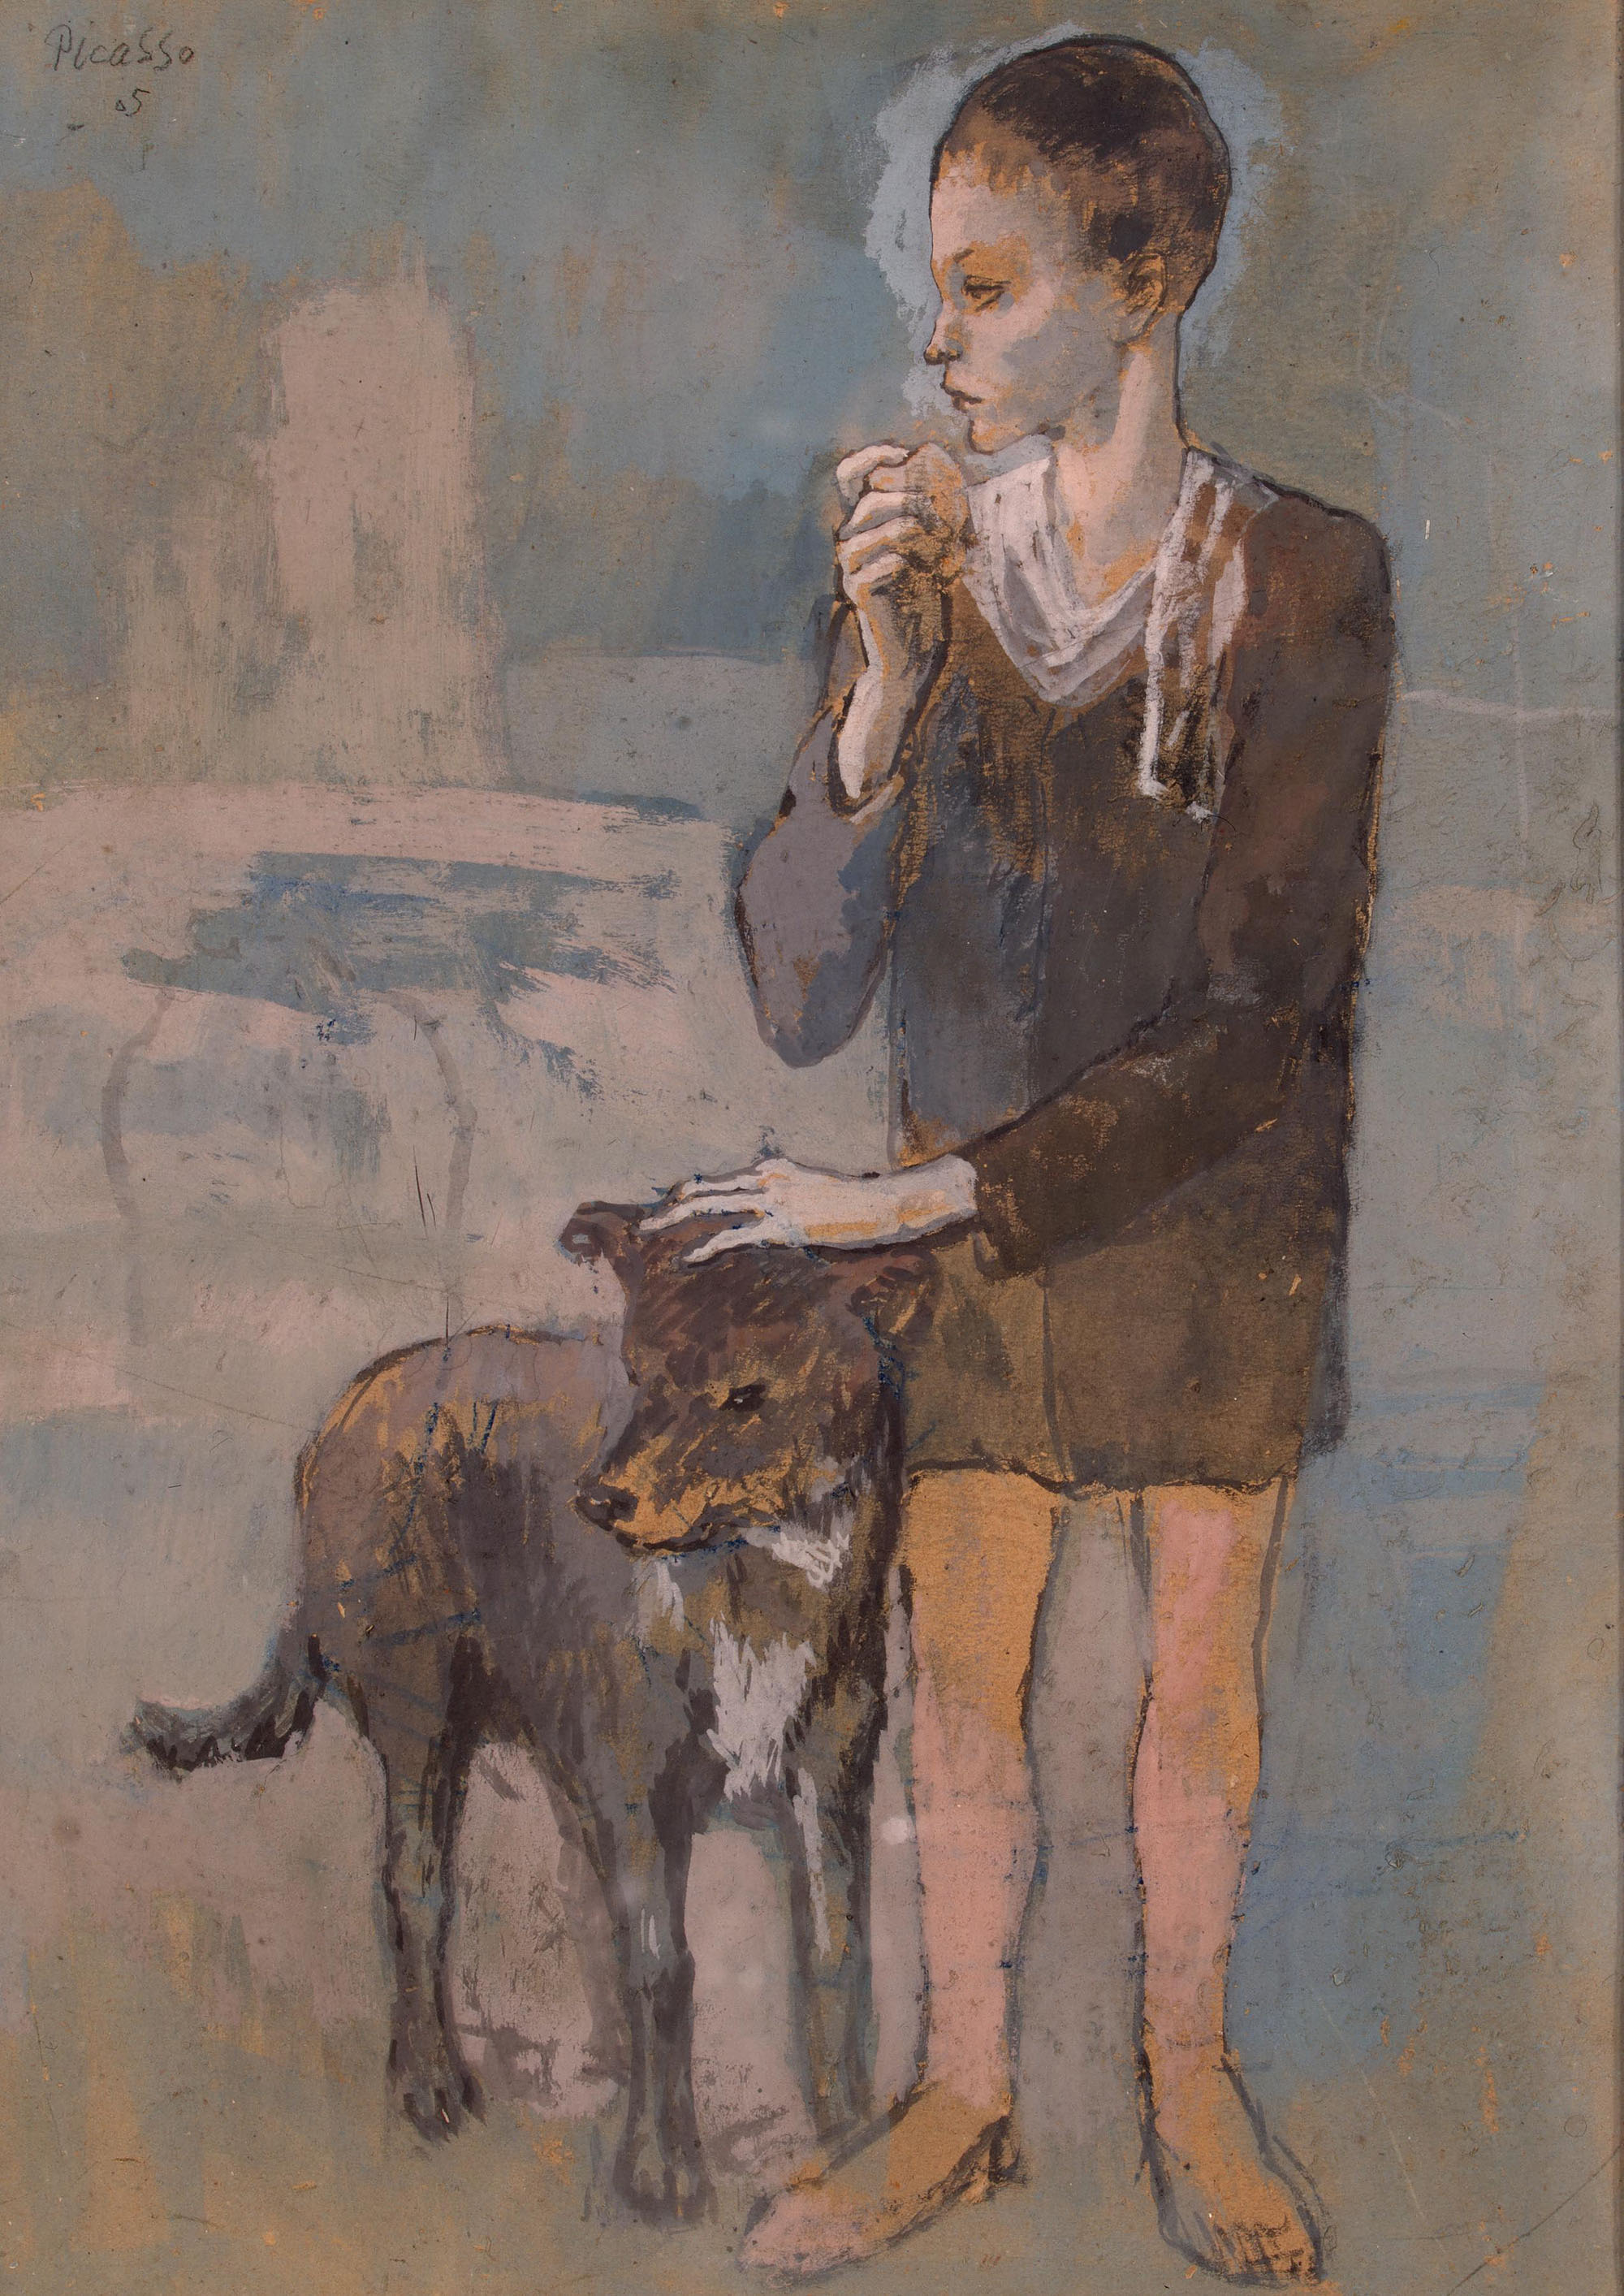 Пабло Пикассо-и-Руис. "Мальчик с собакой". 1905.